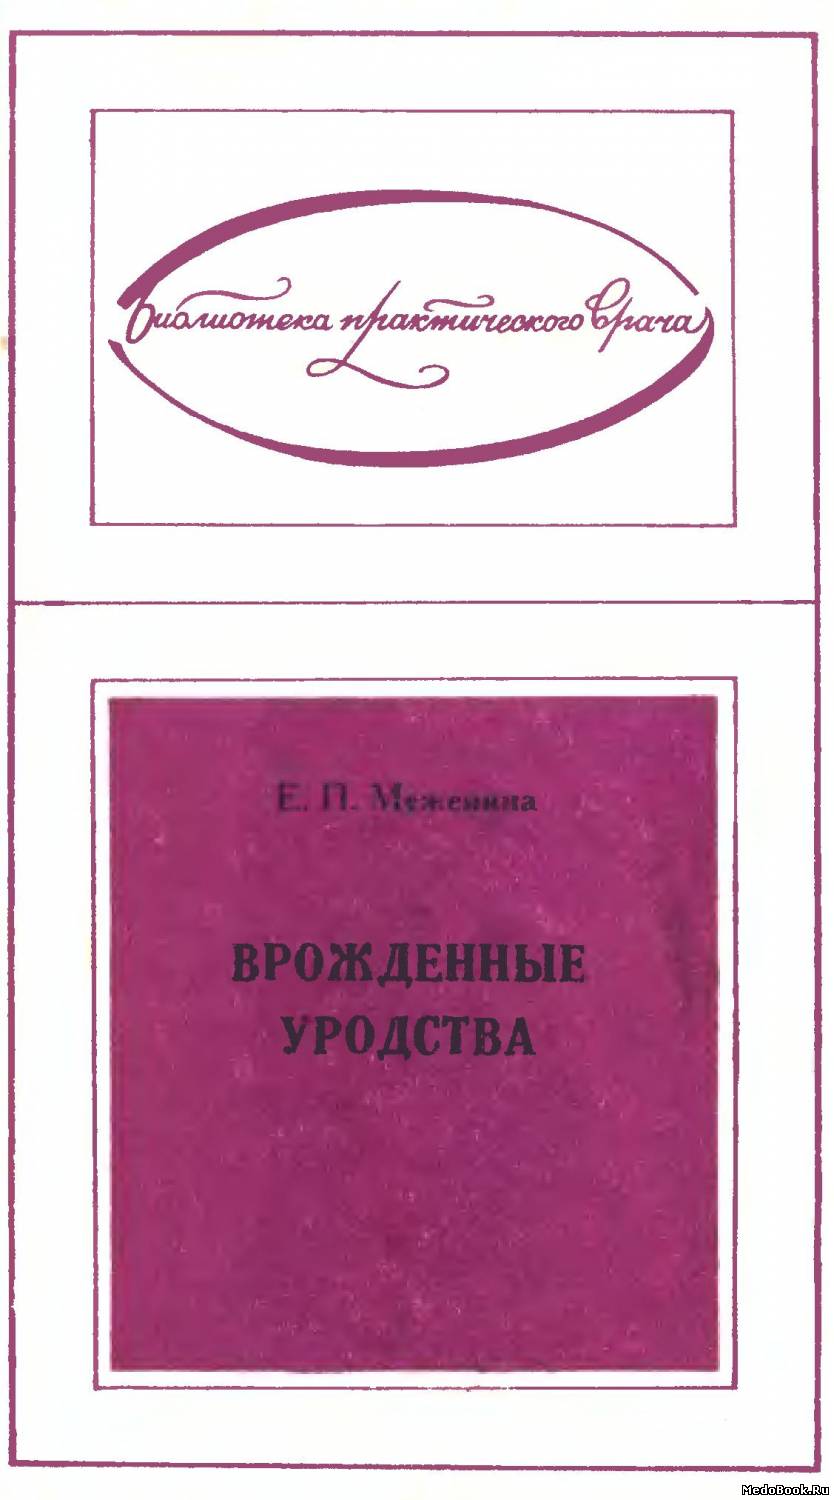 Скачать бесплатно книгу Врожденные уродства, Е.П. Меженина, 1974 г.